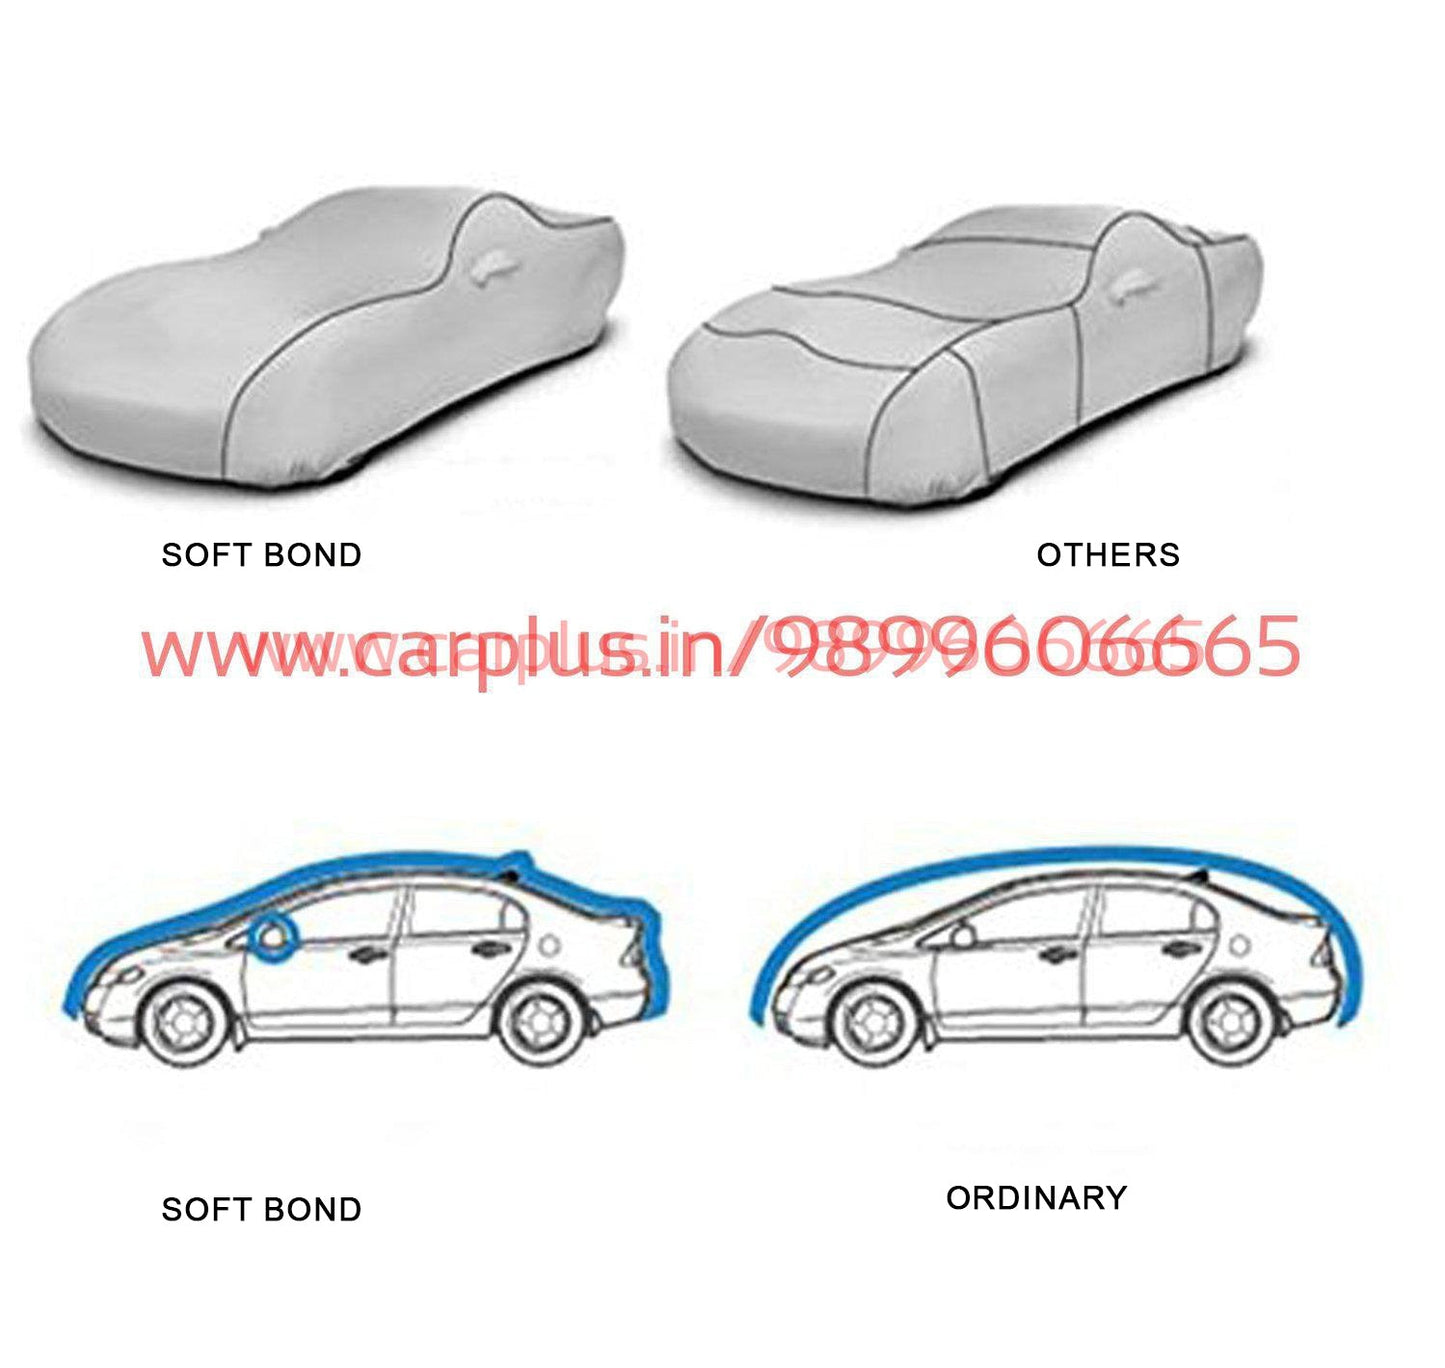 
                  
                    Soft Bond Body Cover for Audi A3(Navy Blue)-Body Cover-SOFT BOND-CARPLUS
                  
                